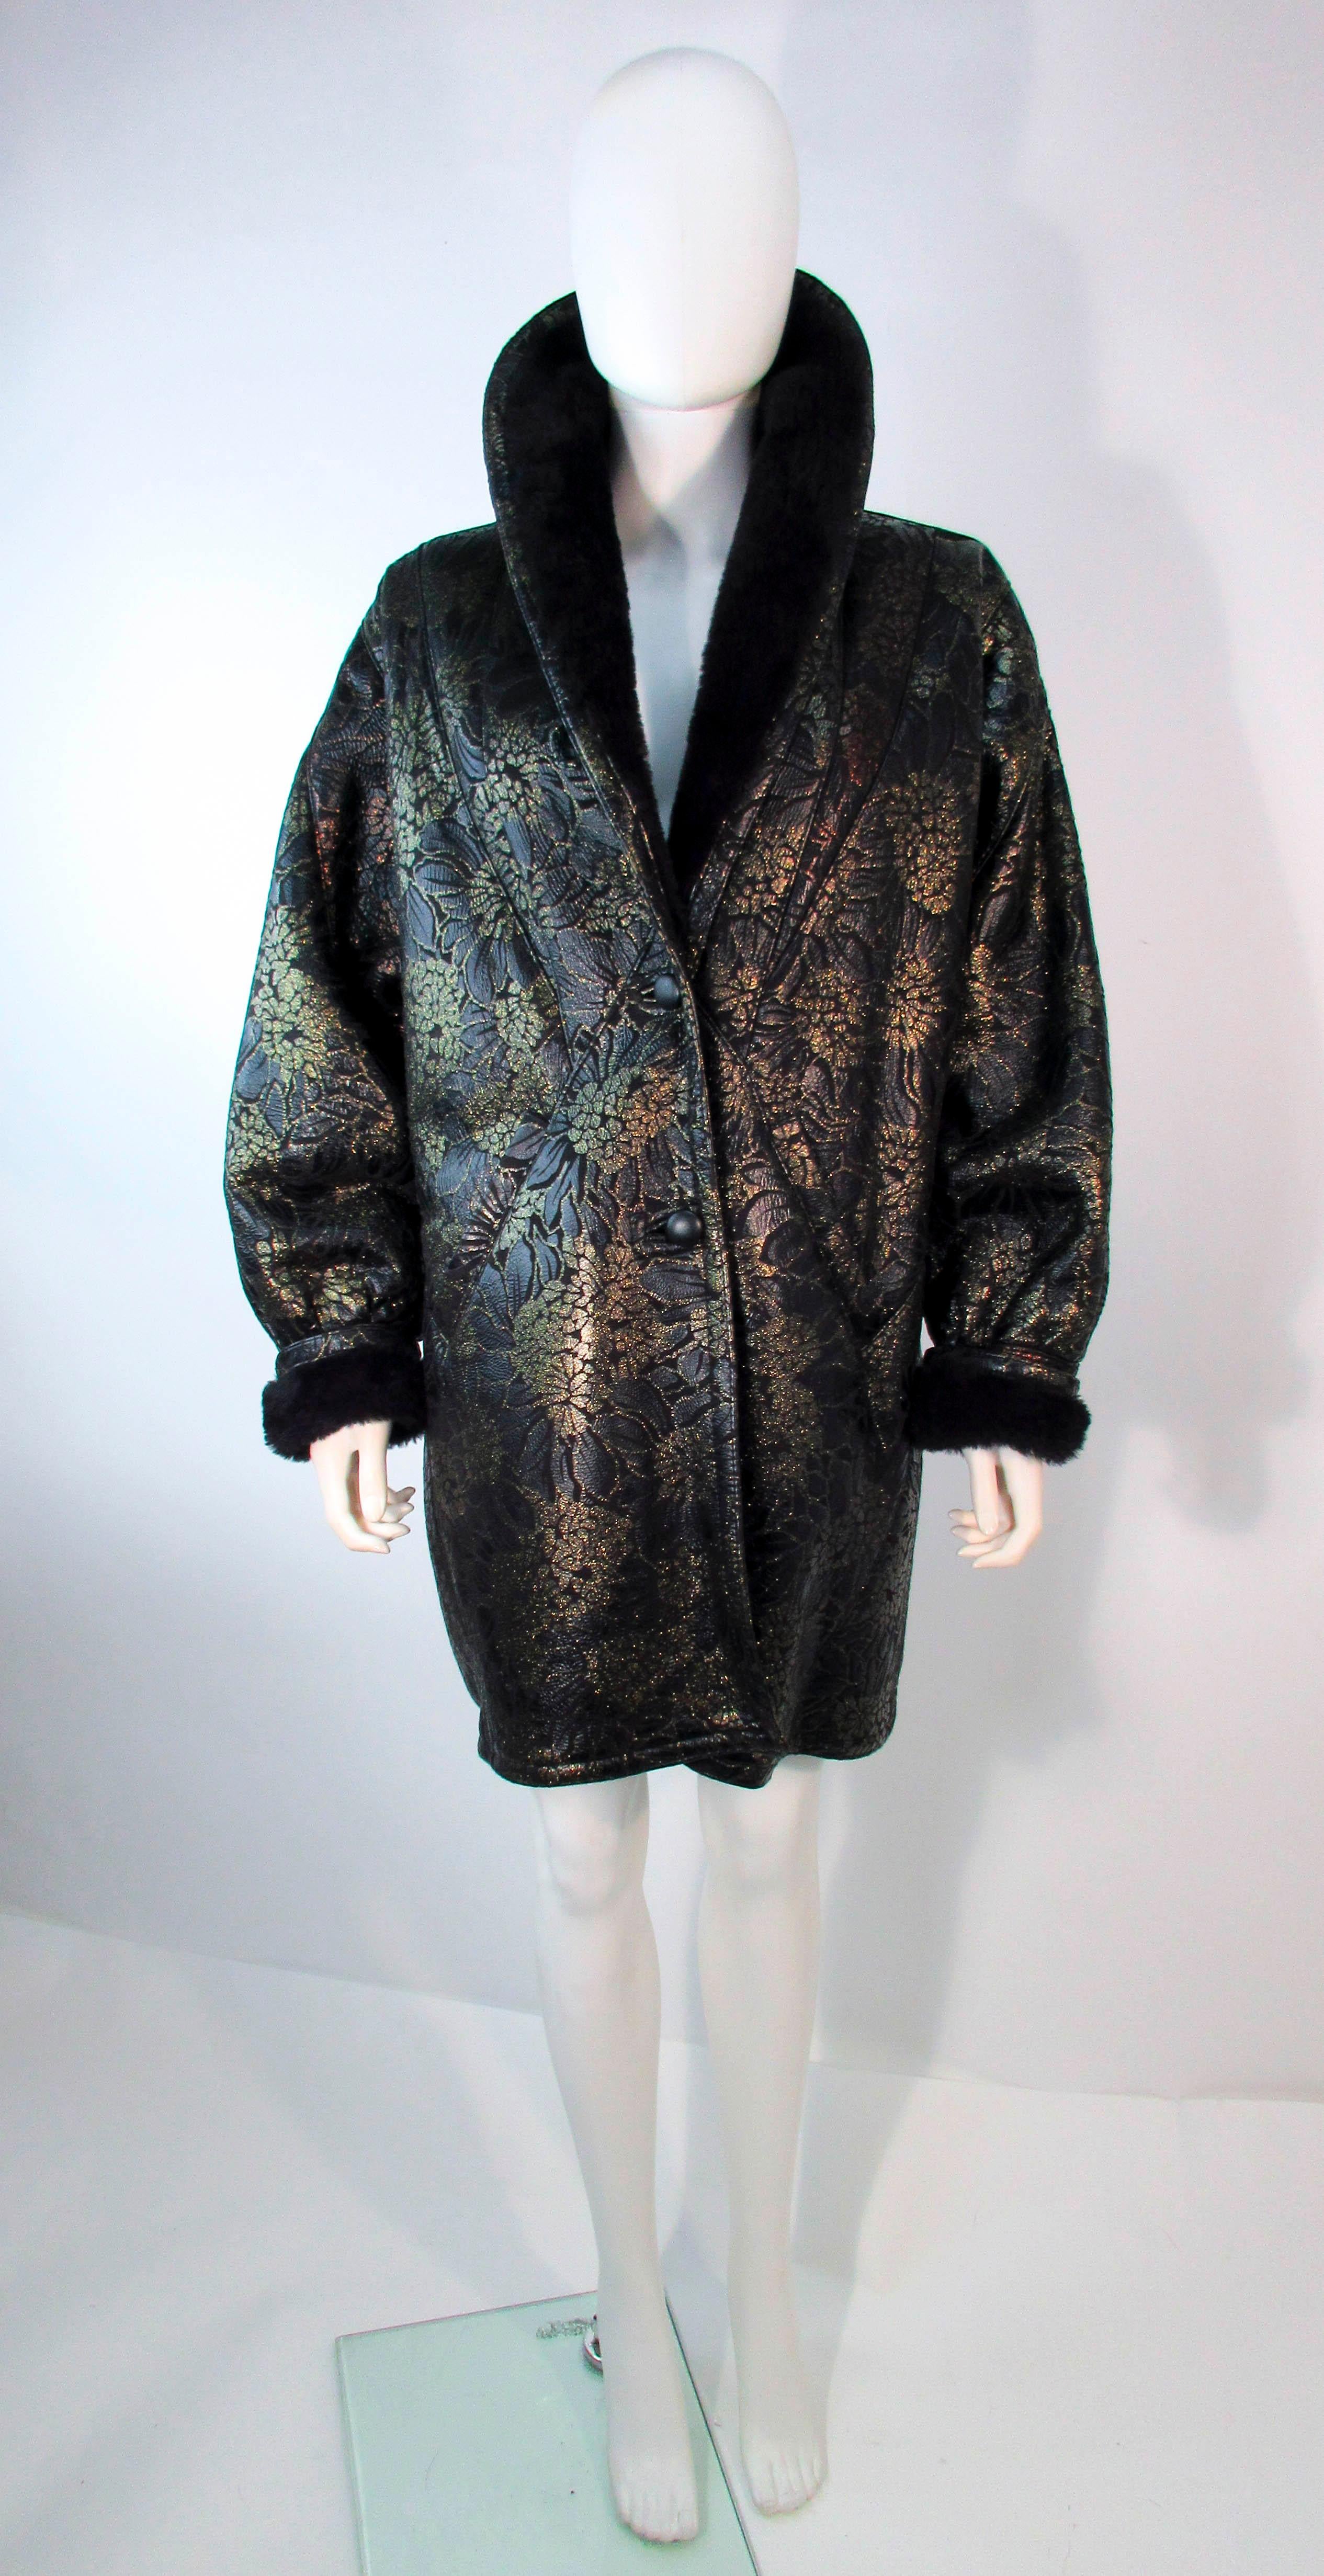 Dies ist ein atemberaubendes Design von Adrienne Landau. Der Mantel besteht aus einem schwarz gemusterten Leder mit einem metallischen, mehrfarbigen, geblümten Shearling-Mantel. Es gibt zwei Taschen und die Ärmel können mit Bündchen versehen werden.